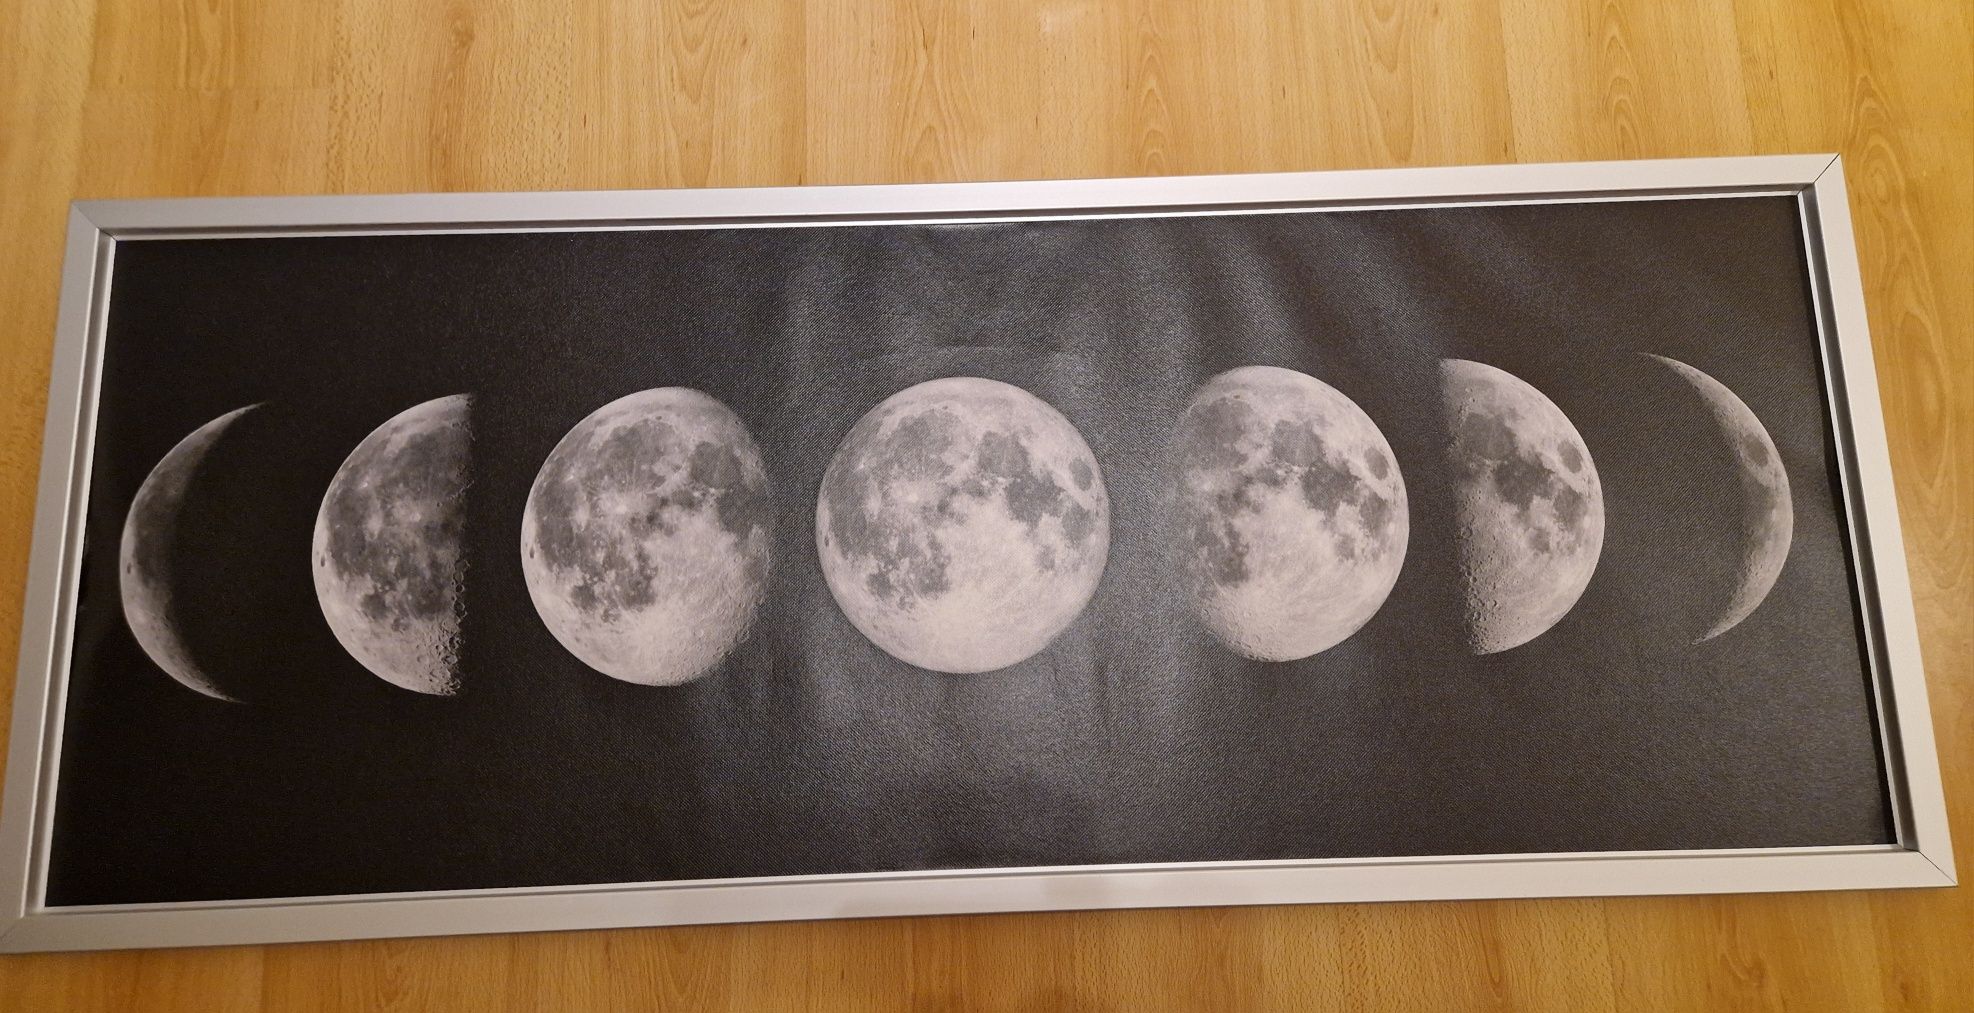 Tela Ikea fases da lua